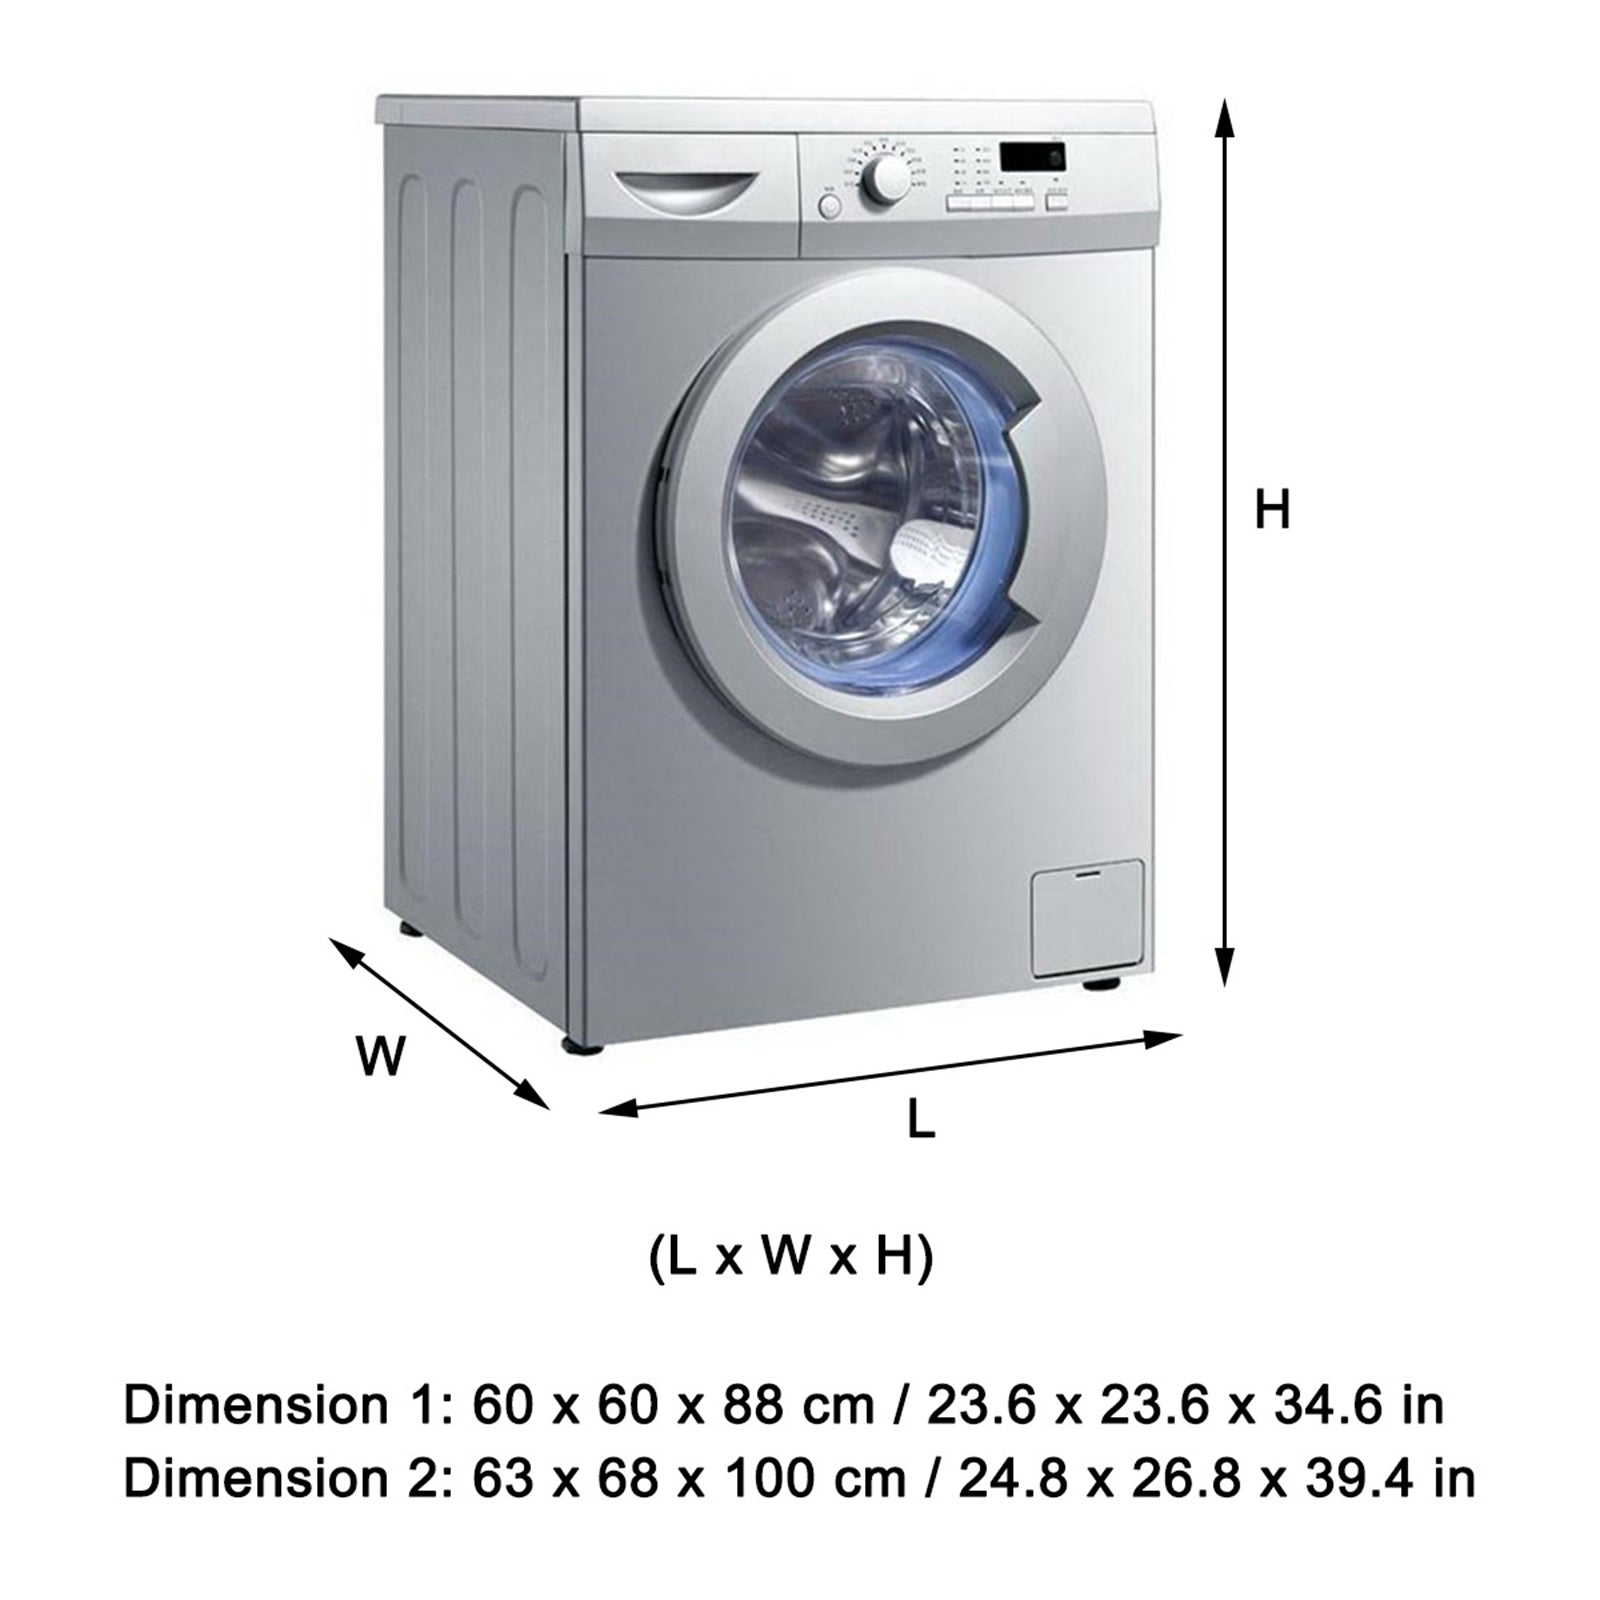 La copertura antipolvere superiore della lavatrice impermeabile protegge l'asciugatrice a caricamento frontale